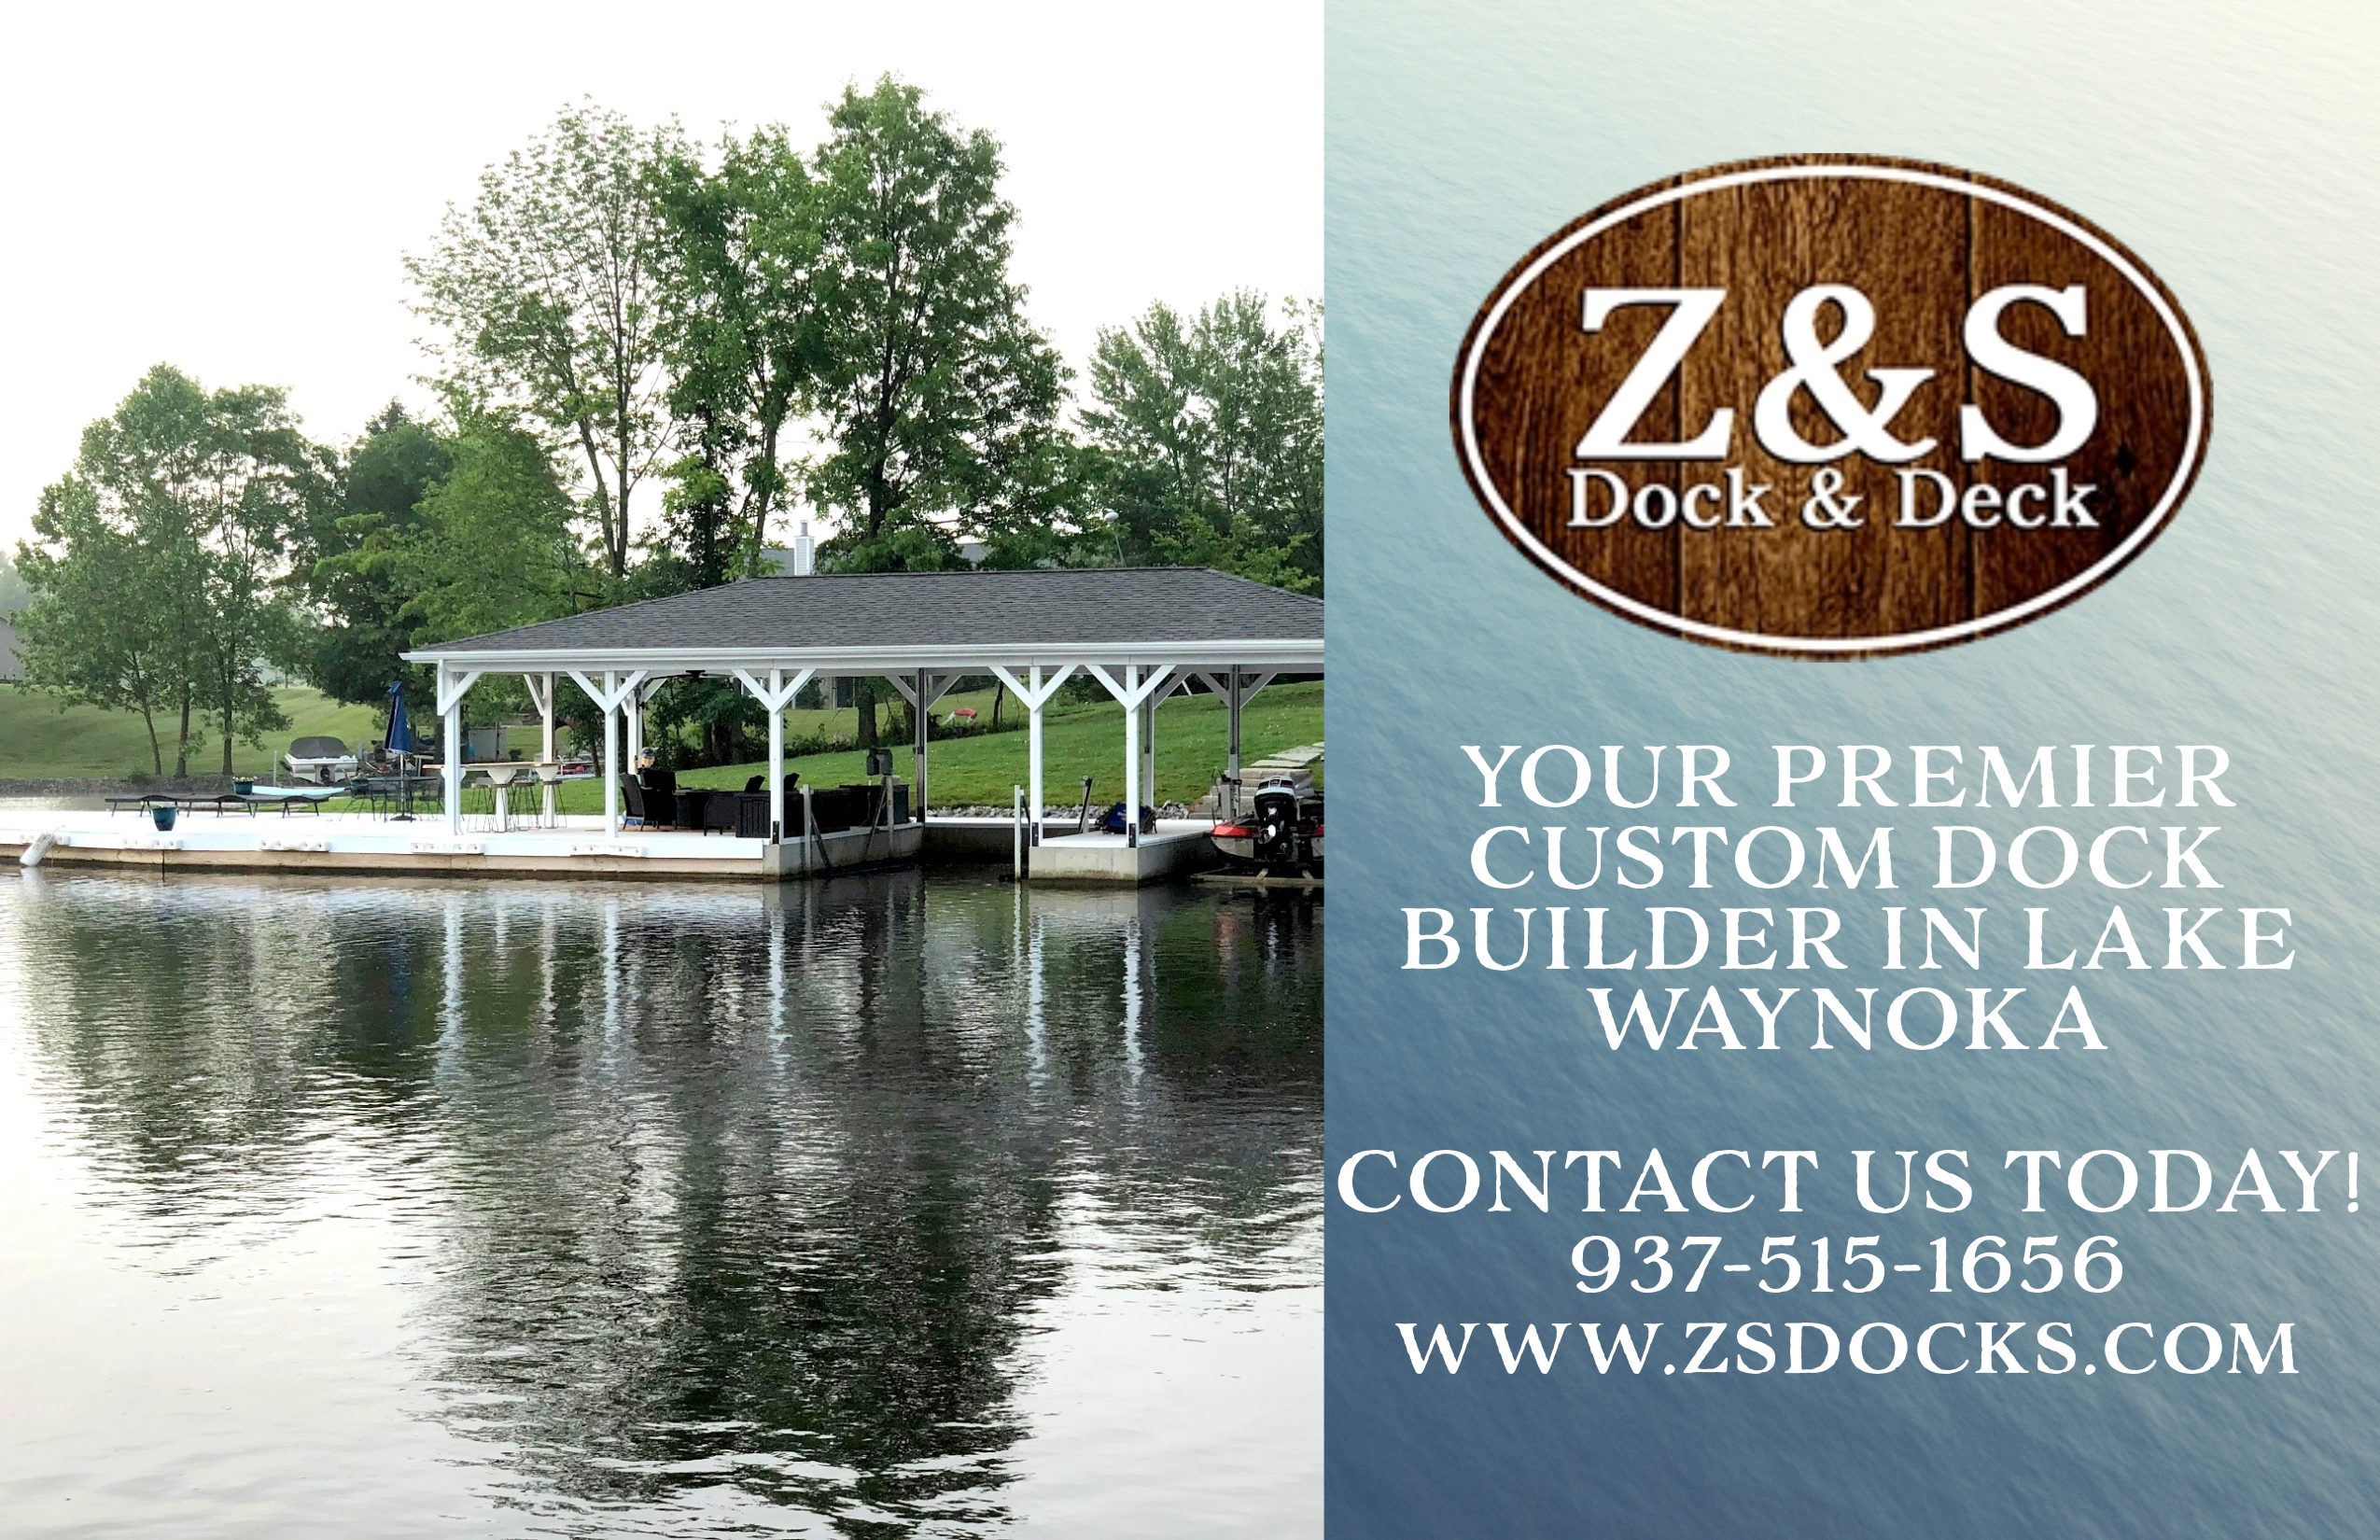 Z & S Dock & Deck Advertisement